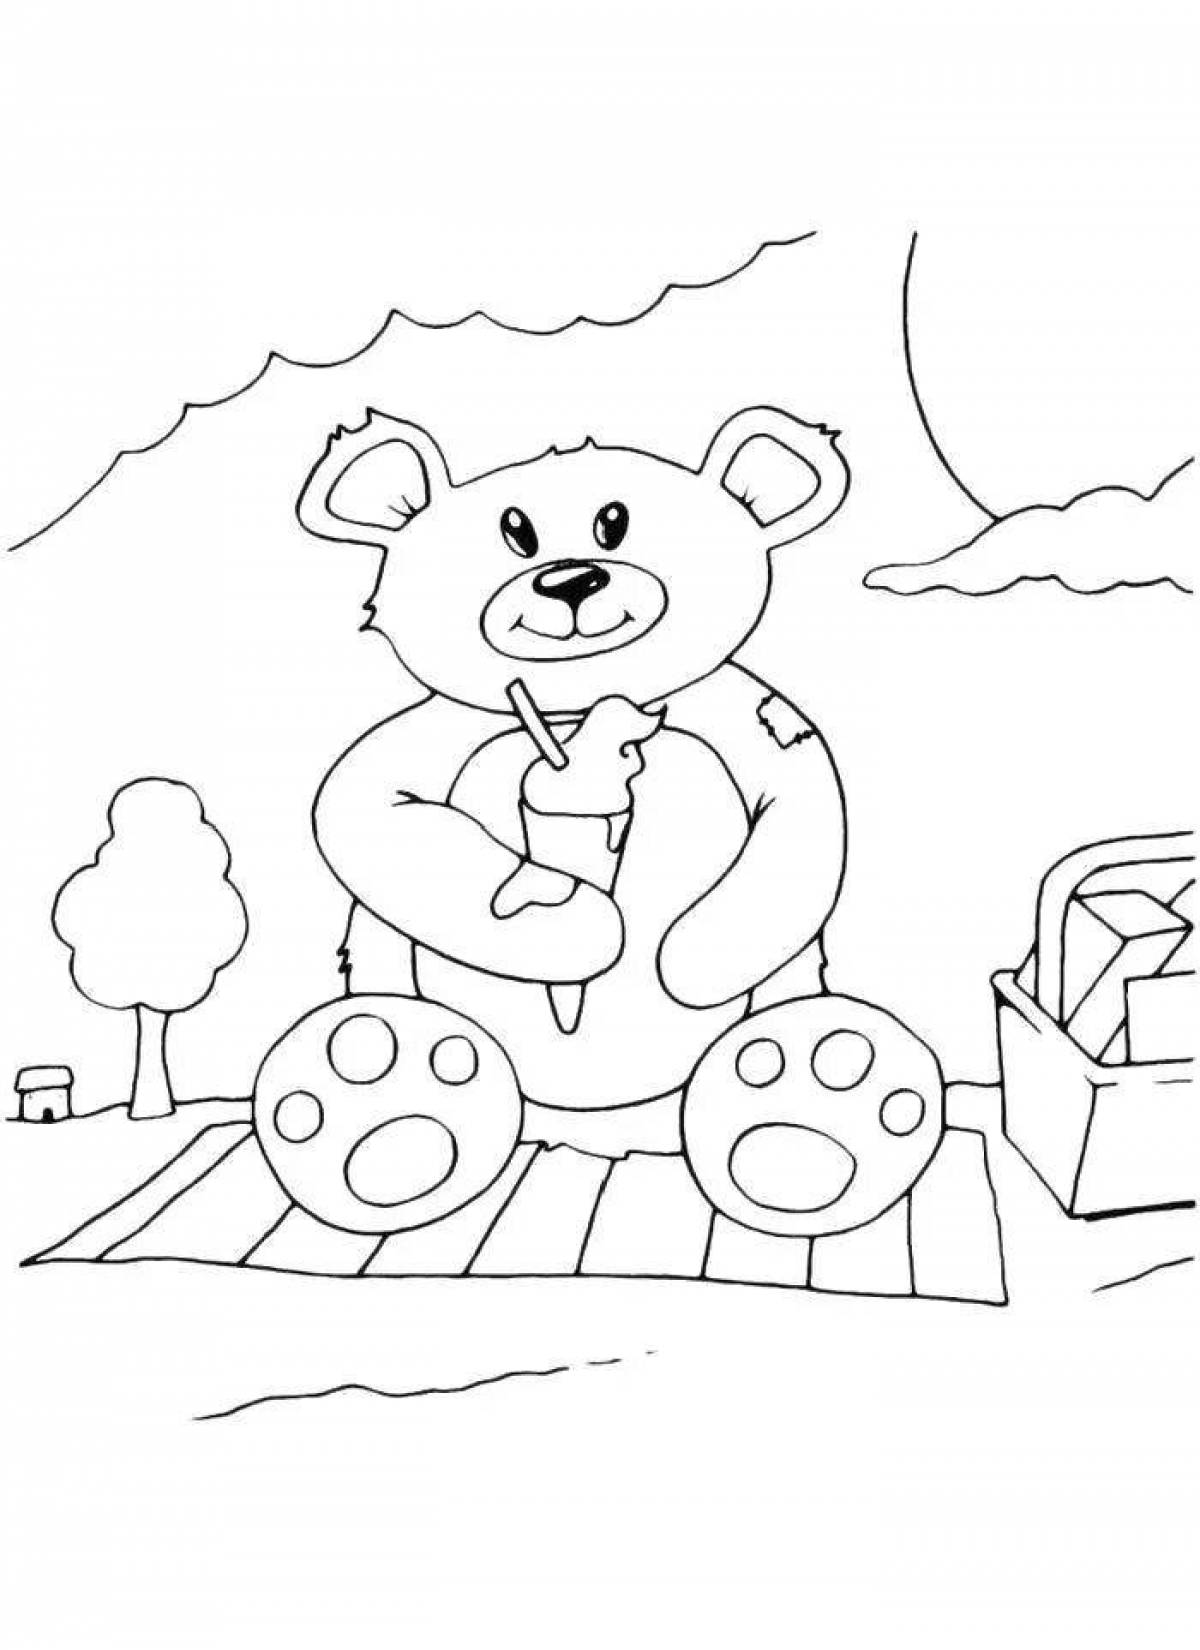 Two greedy teddy bears fun coloring book